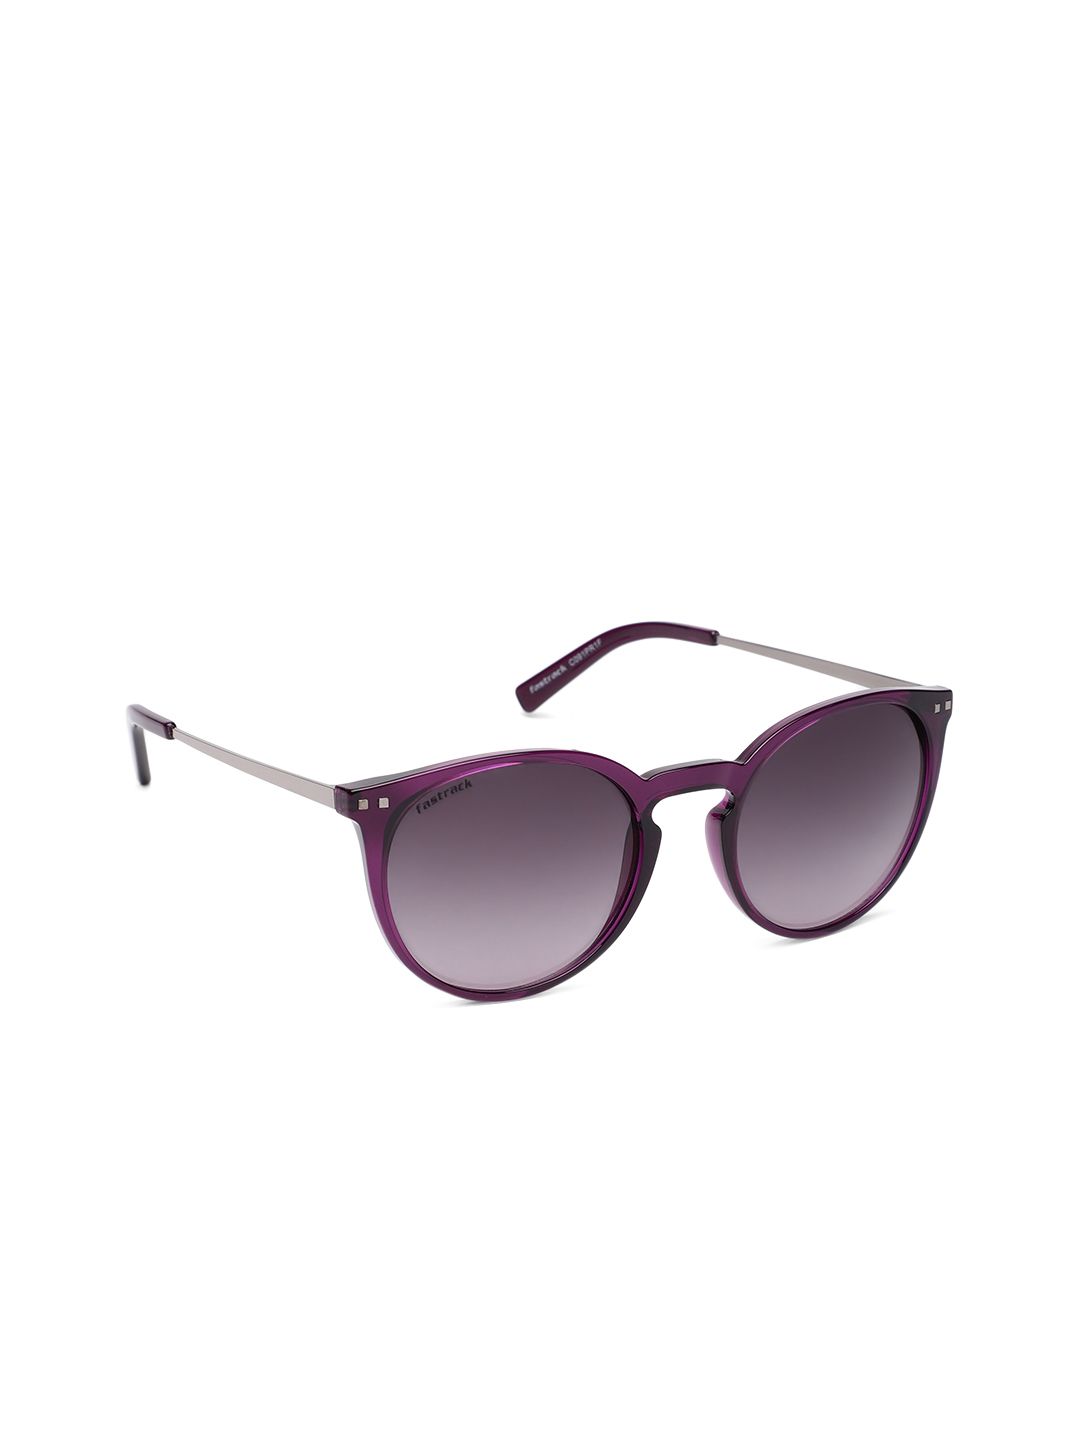 Fastrack Women Mirrored Oval Sunglasses NBC091PR1F Price in India